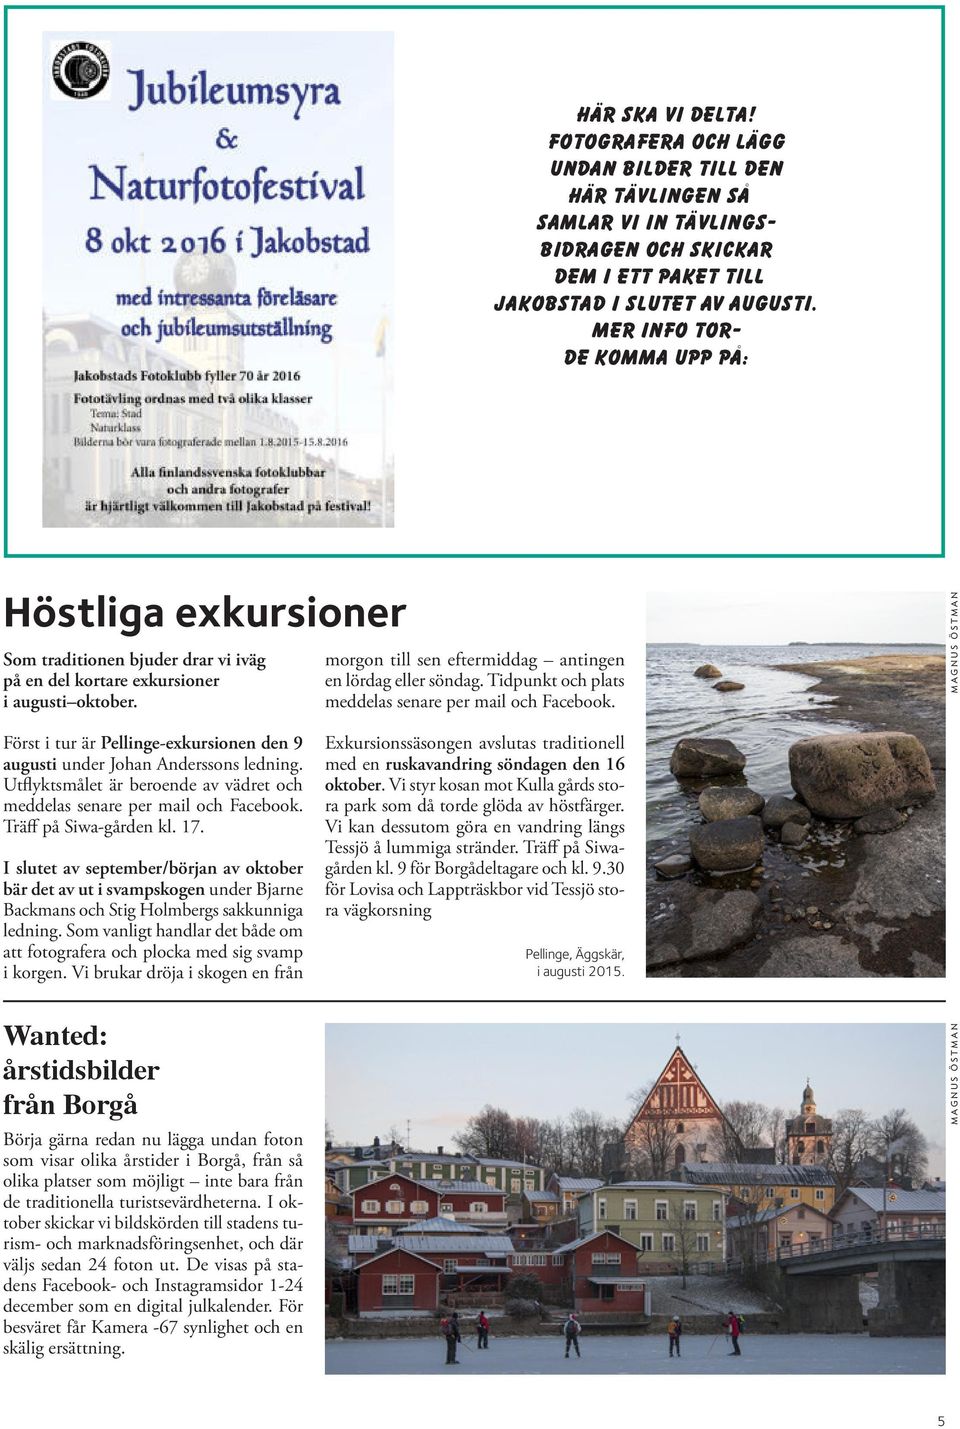 Först i tur är Pellinge-exkursionen den 9 augusti under Johan Anderssons ledning. Utflyktsmålet är beroende av vädret och meddelas senare per mail och Facebook. Träff på Siwa-gården kl. 17.